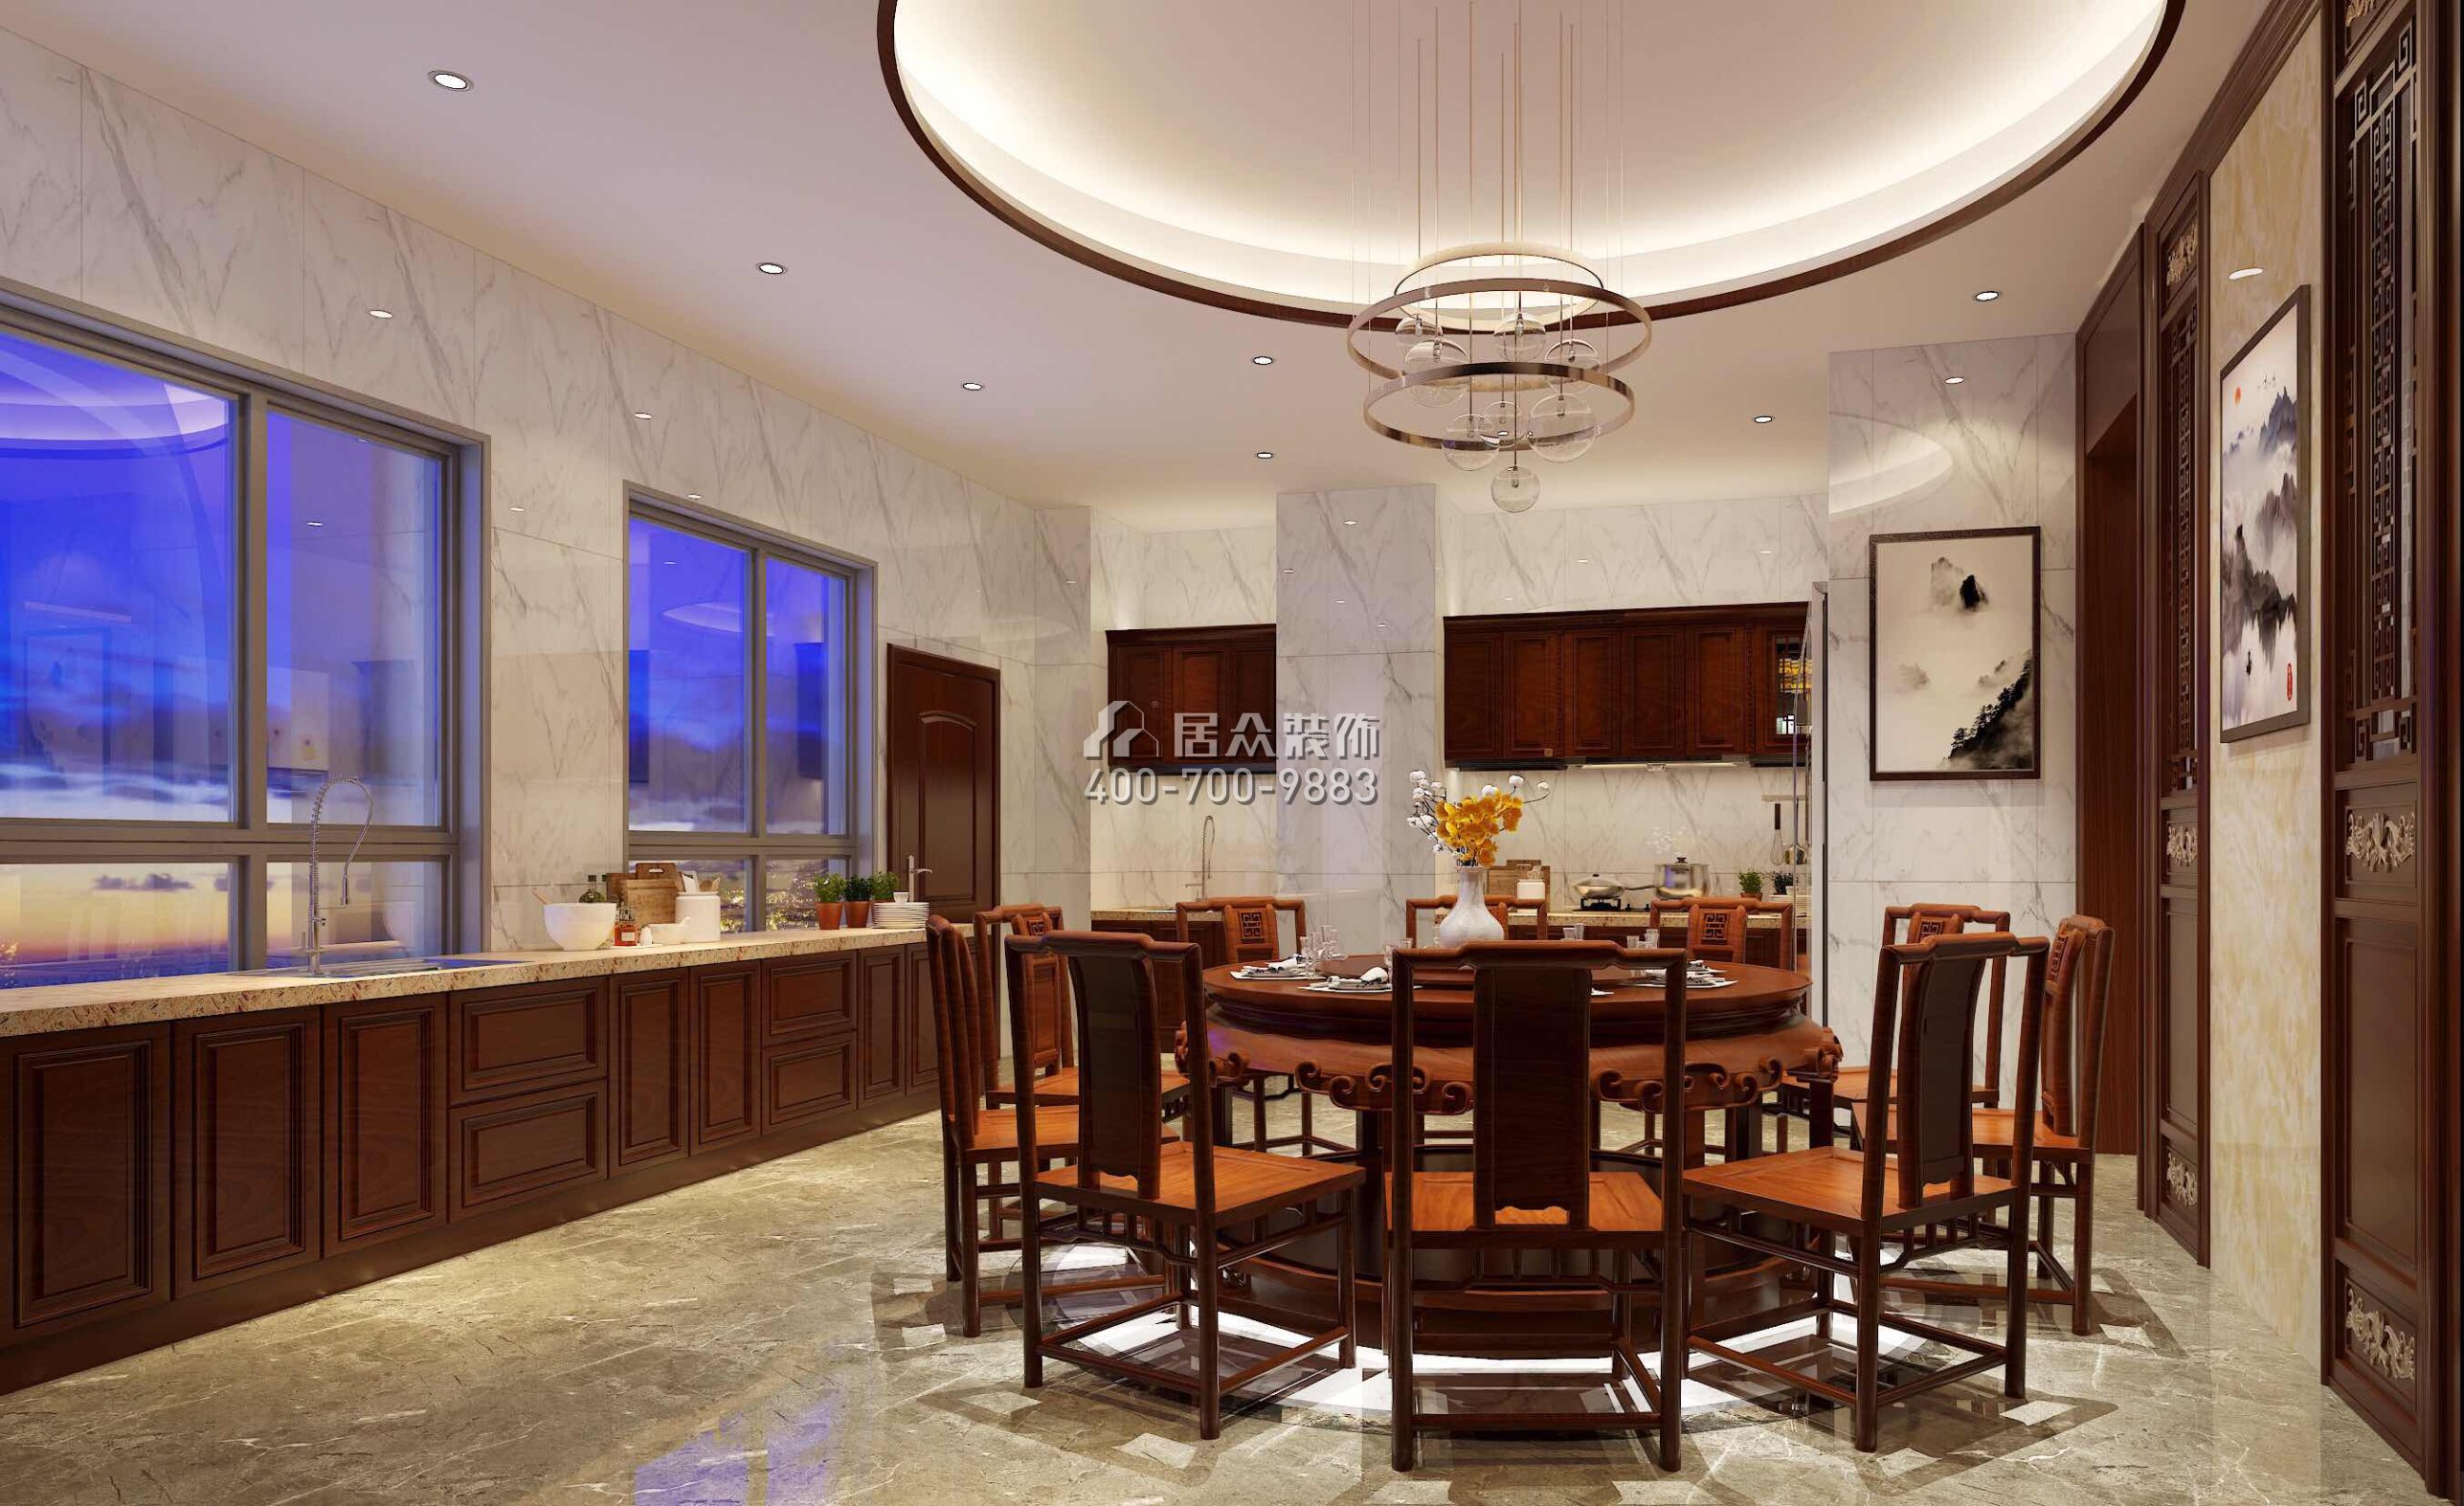 雅居乐白鹭湖300平方米中式风格平层户型餐厅装修效果图